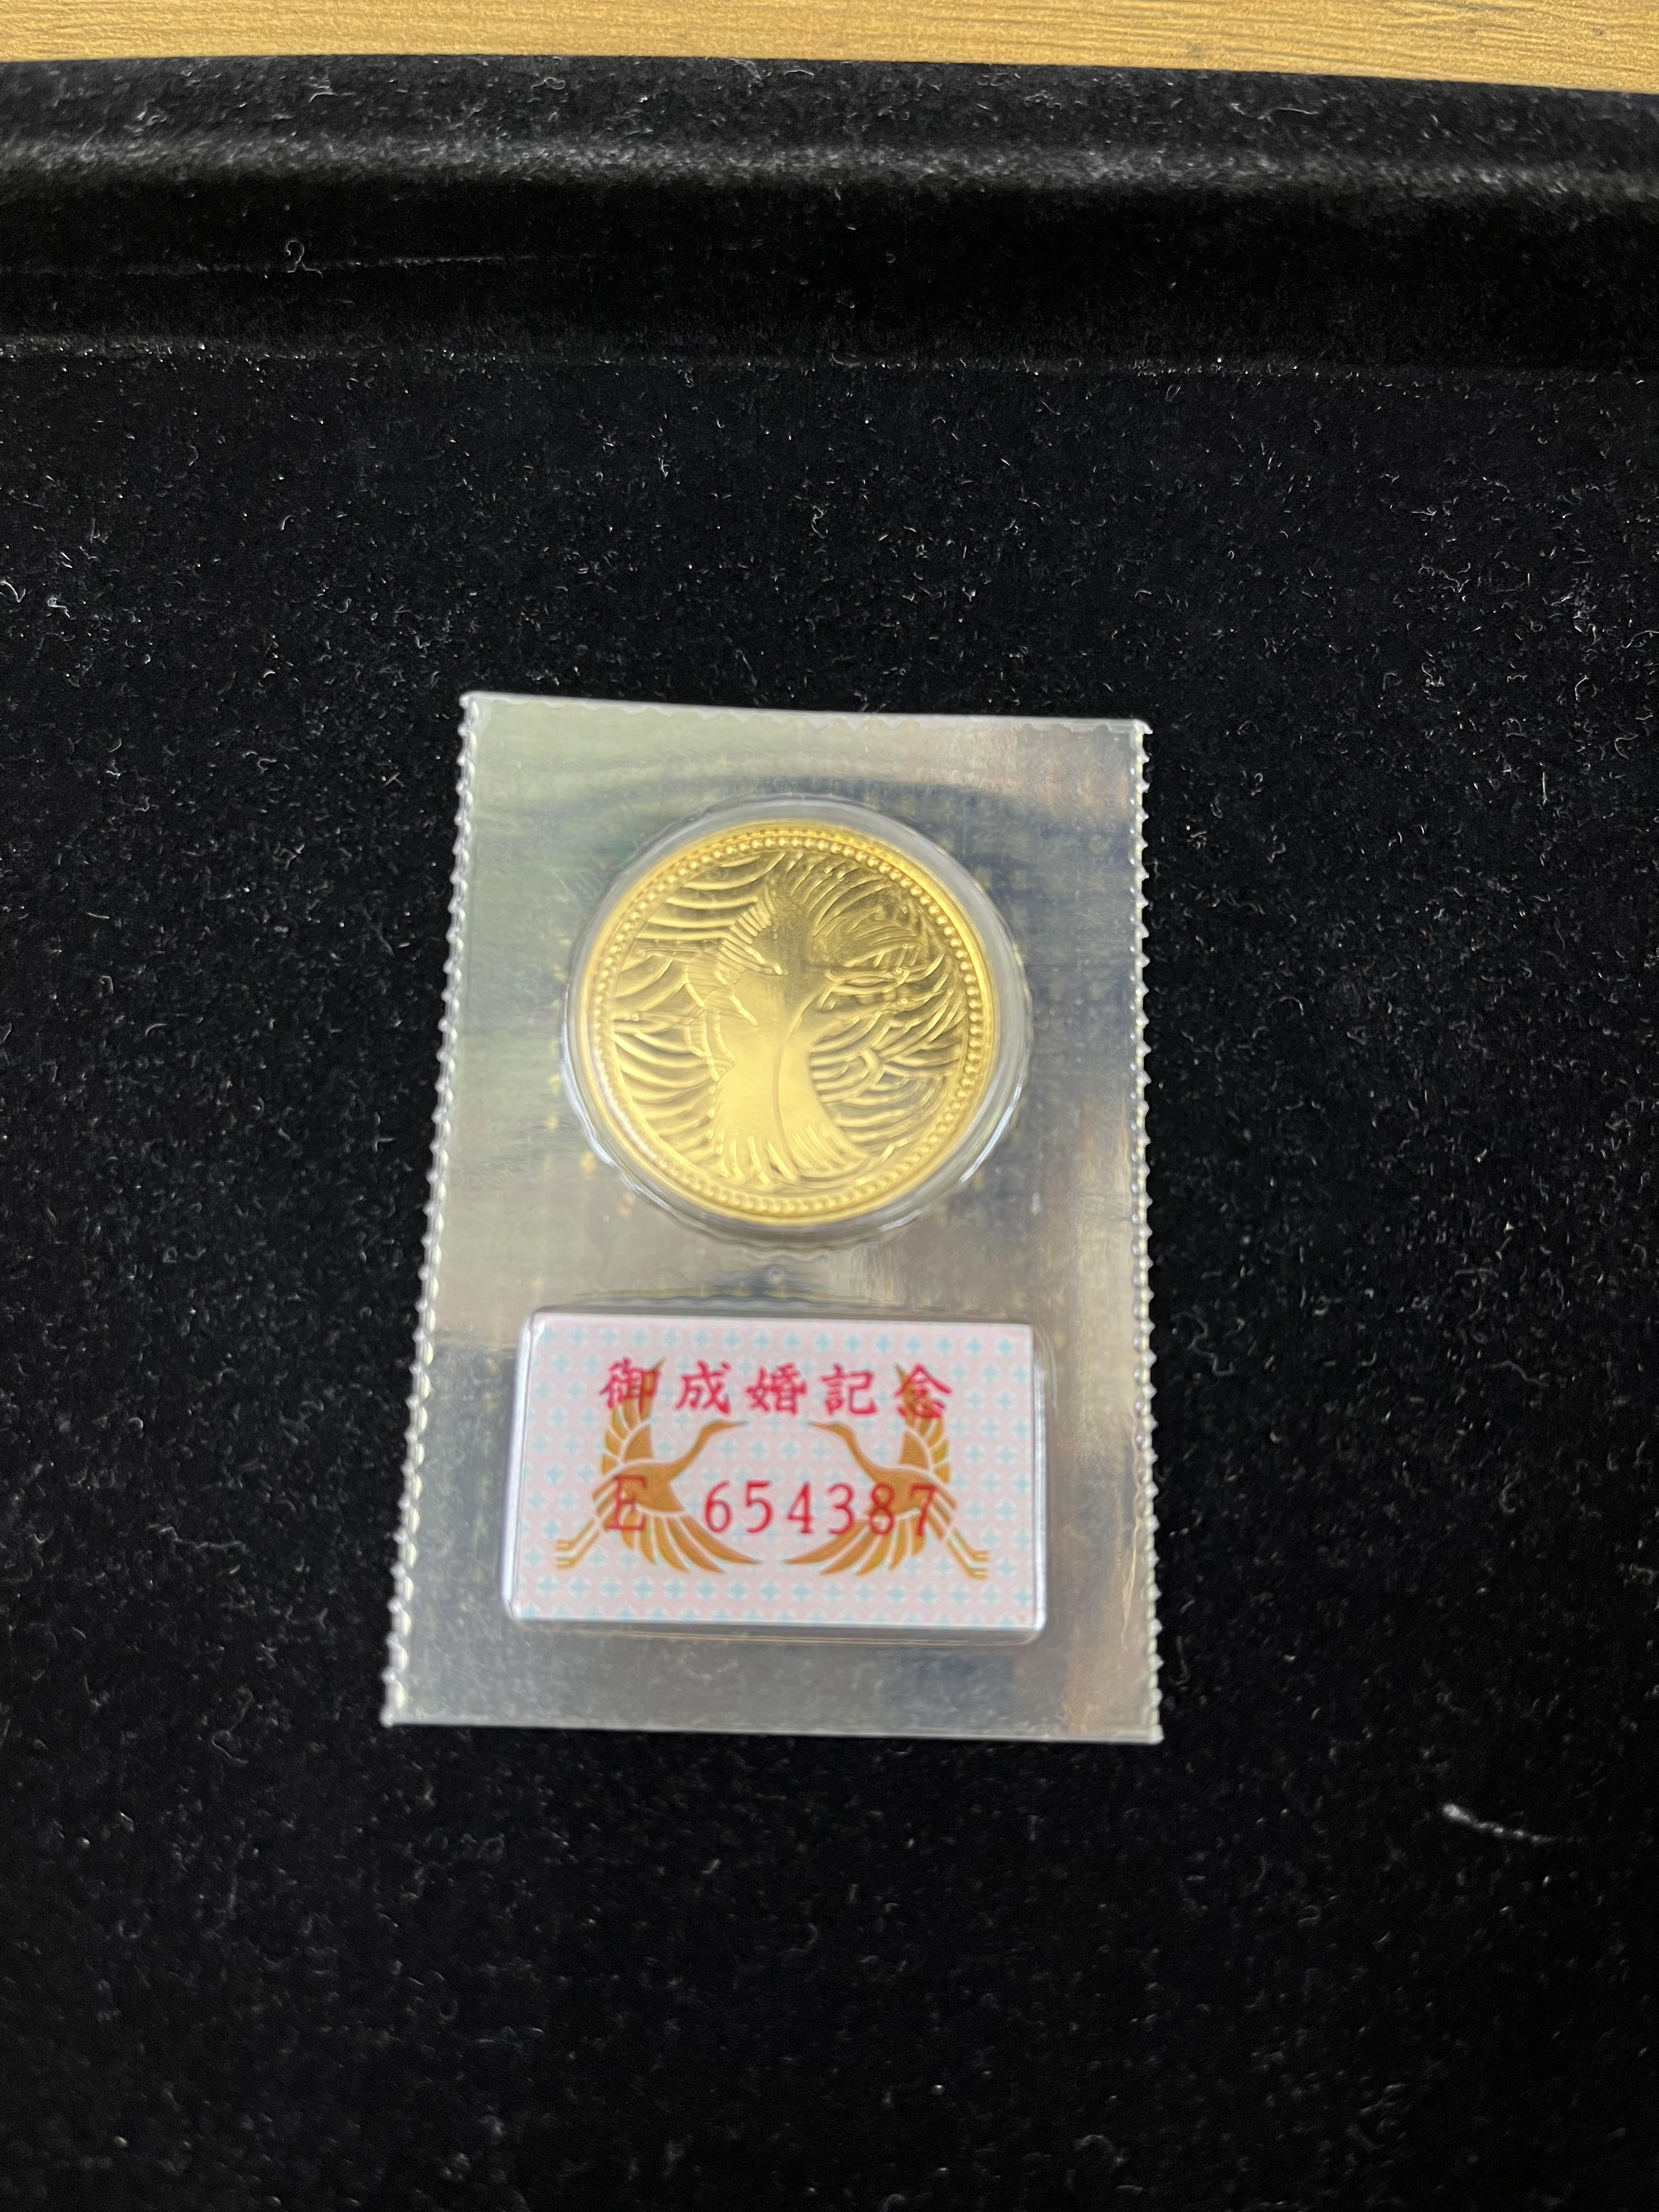 皇太子御成婚記念5万円金貨をお買取り致しました。